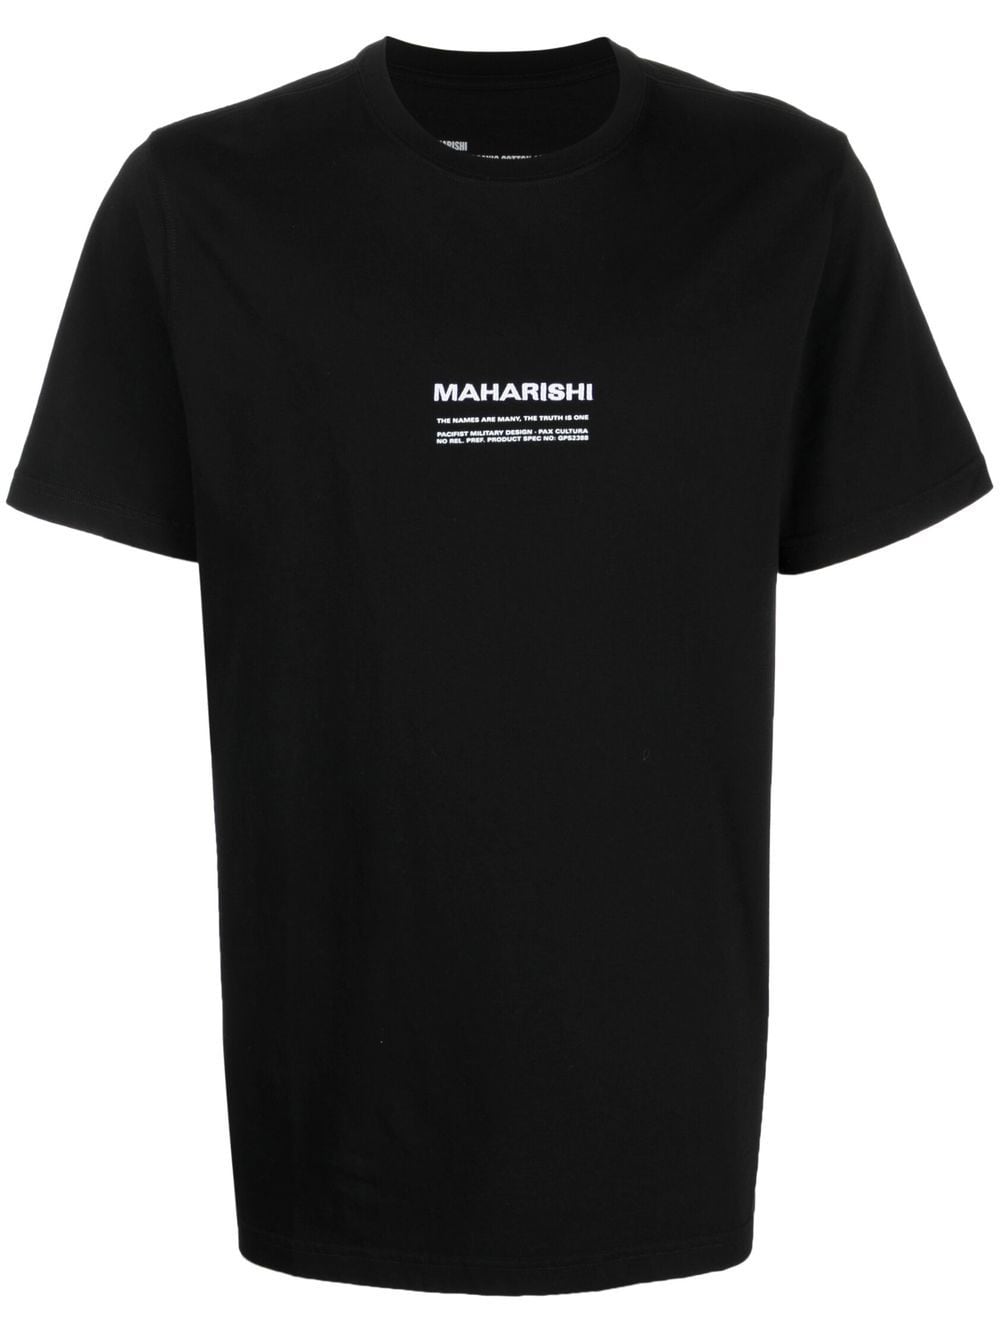 maharishi t-shirt en coton biologique à logo brodé - noir